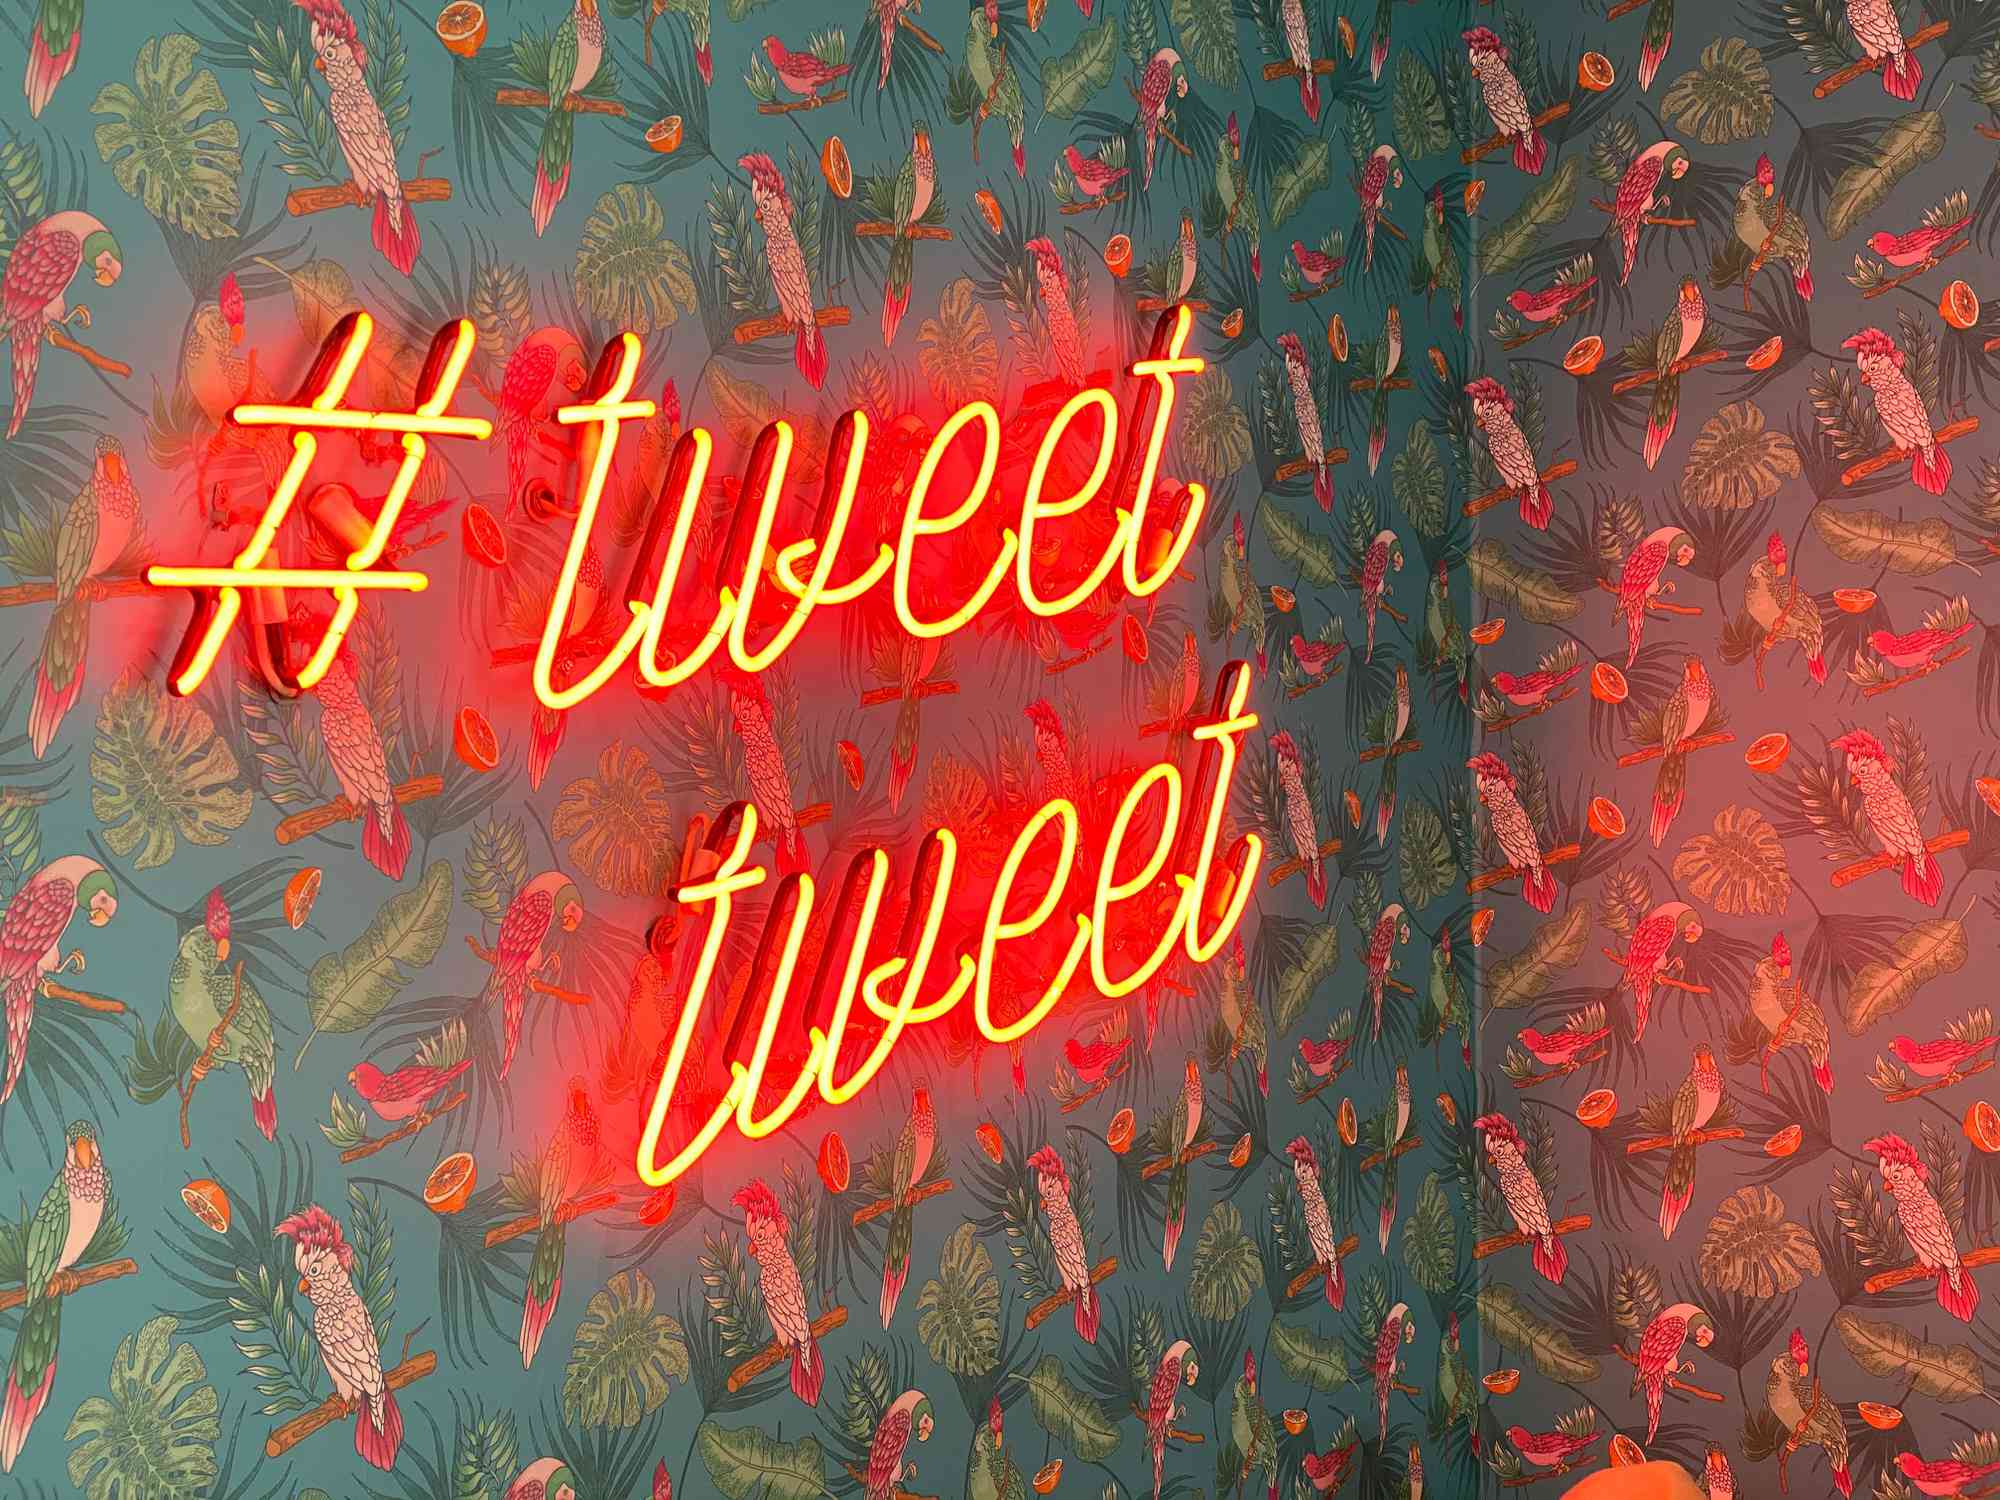 Неонова вивіска з написом #tweettweet на стіні, покритій шпалерами на тему папуг і джунглів.